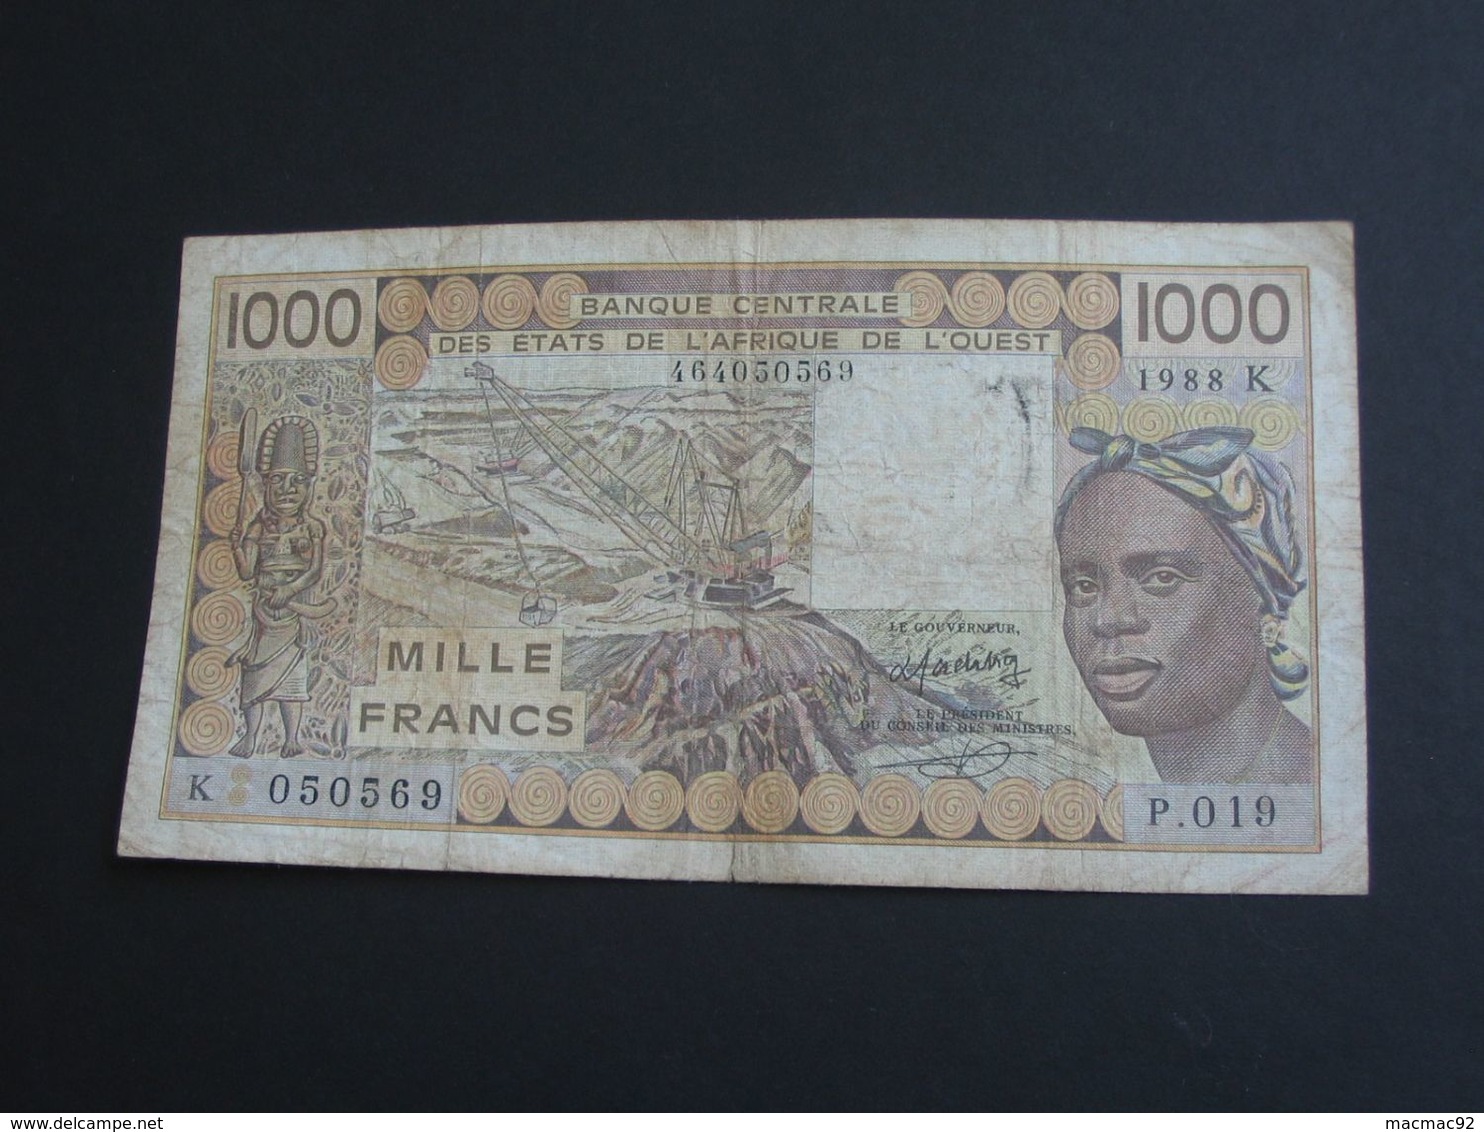 1000 Mille Francs 1988 -SENEGAL - Banque Centrale Des états De L'Afrique De L'ouest **** EN ACHAT IMMEDIAT **** - Senegal